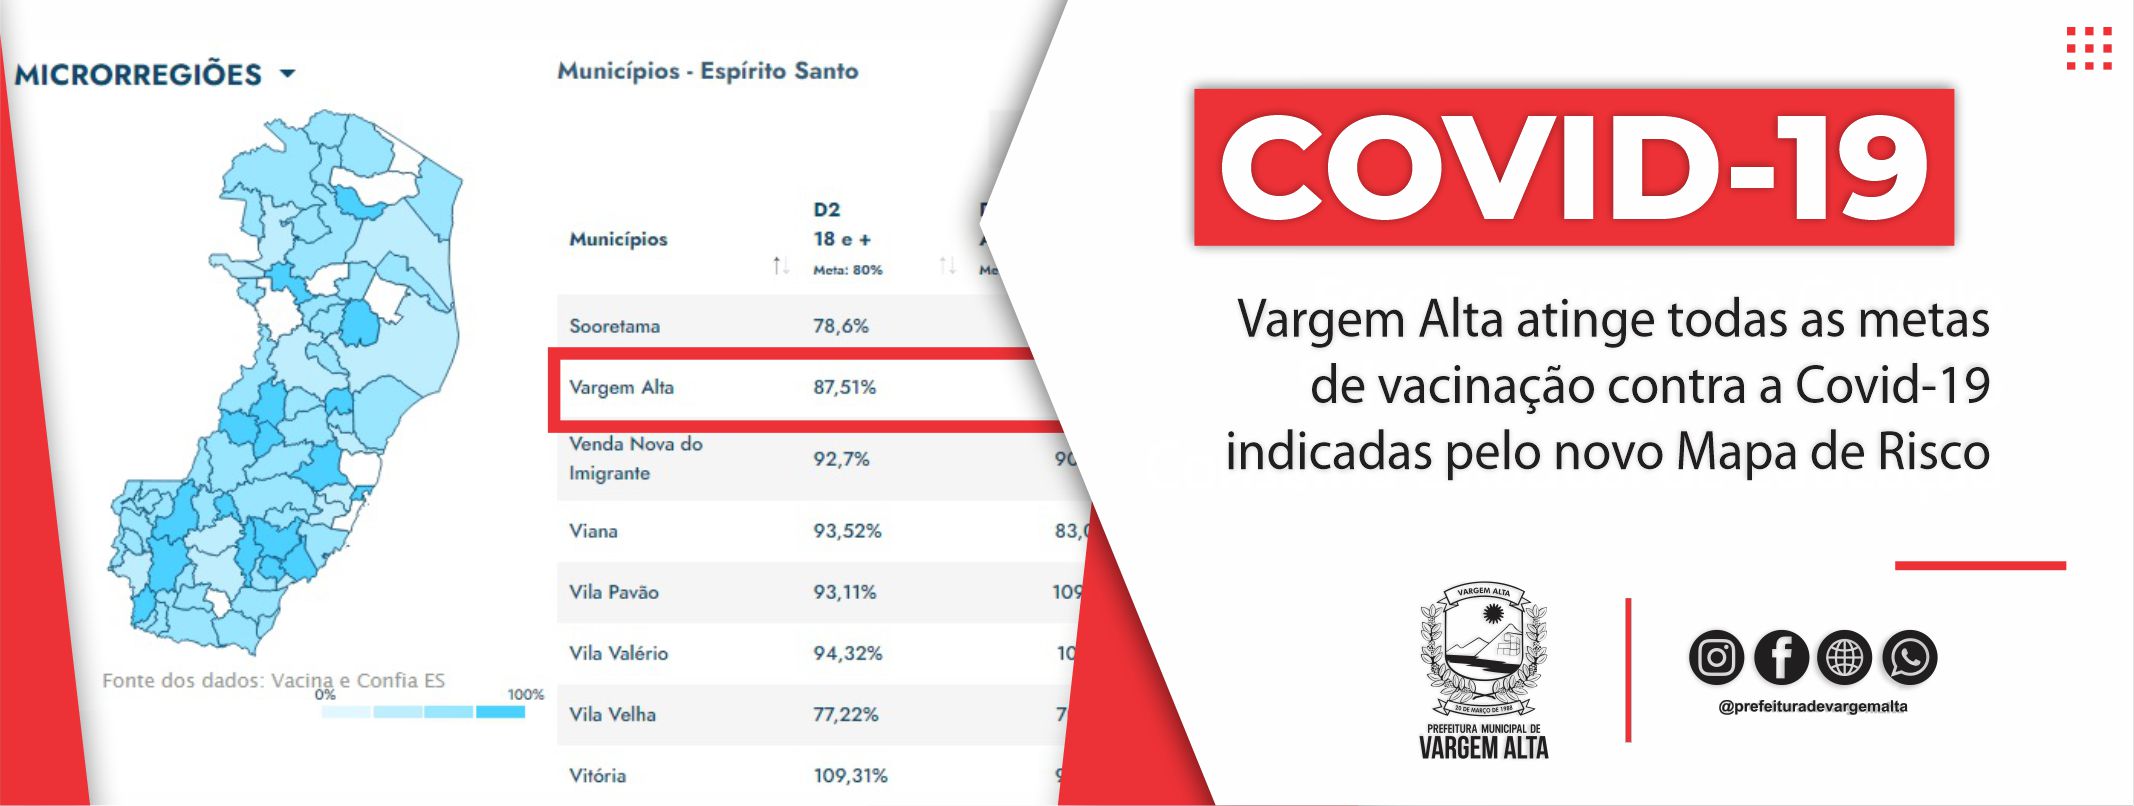 Vargem Alta atinge todas as metas de vacinação contra a Covid-19 indicadas pelo novo Mapa de Risco